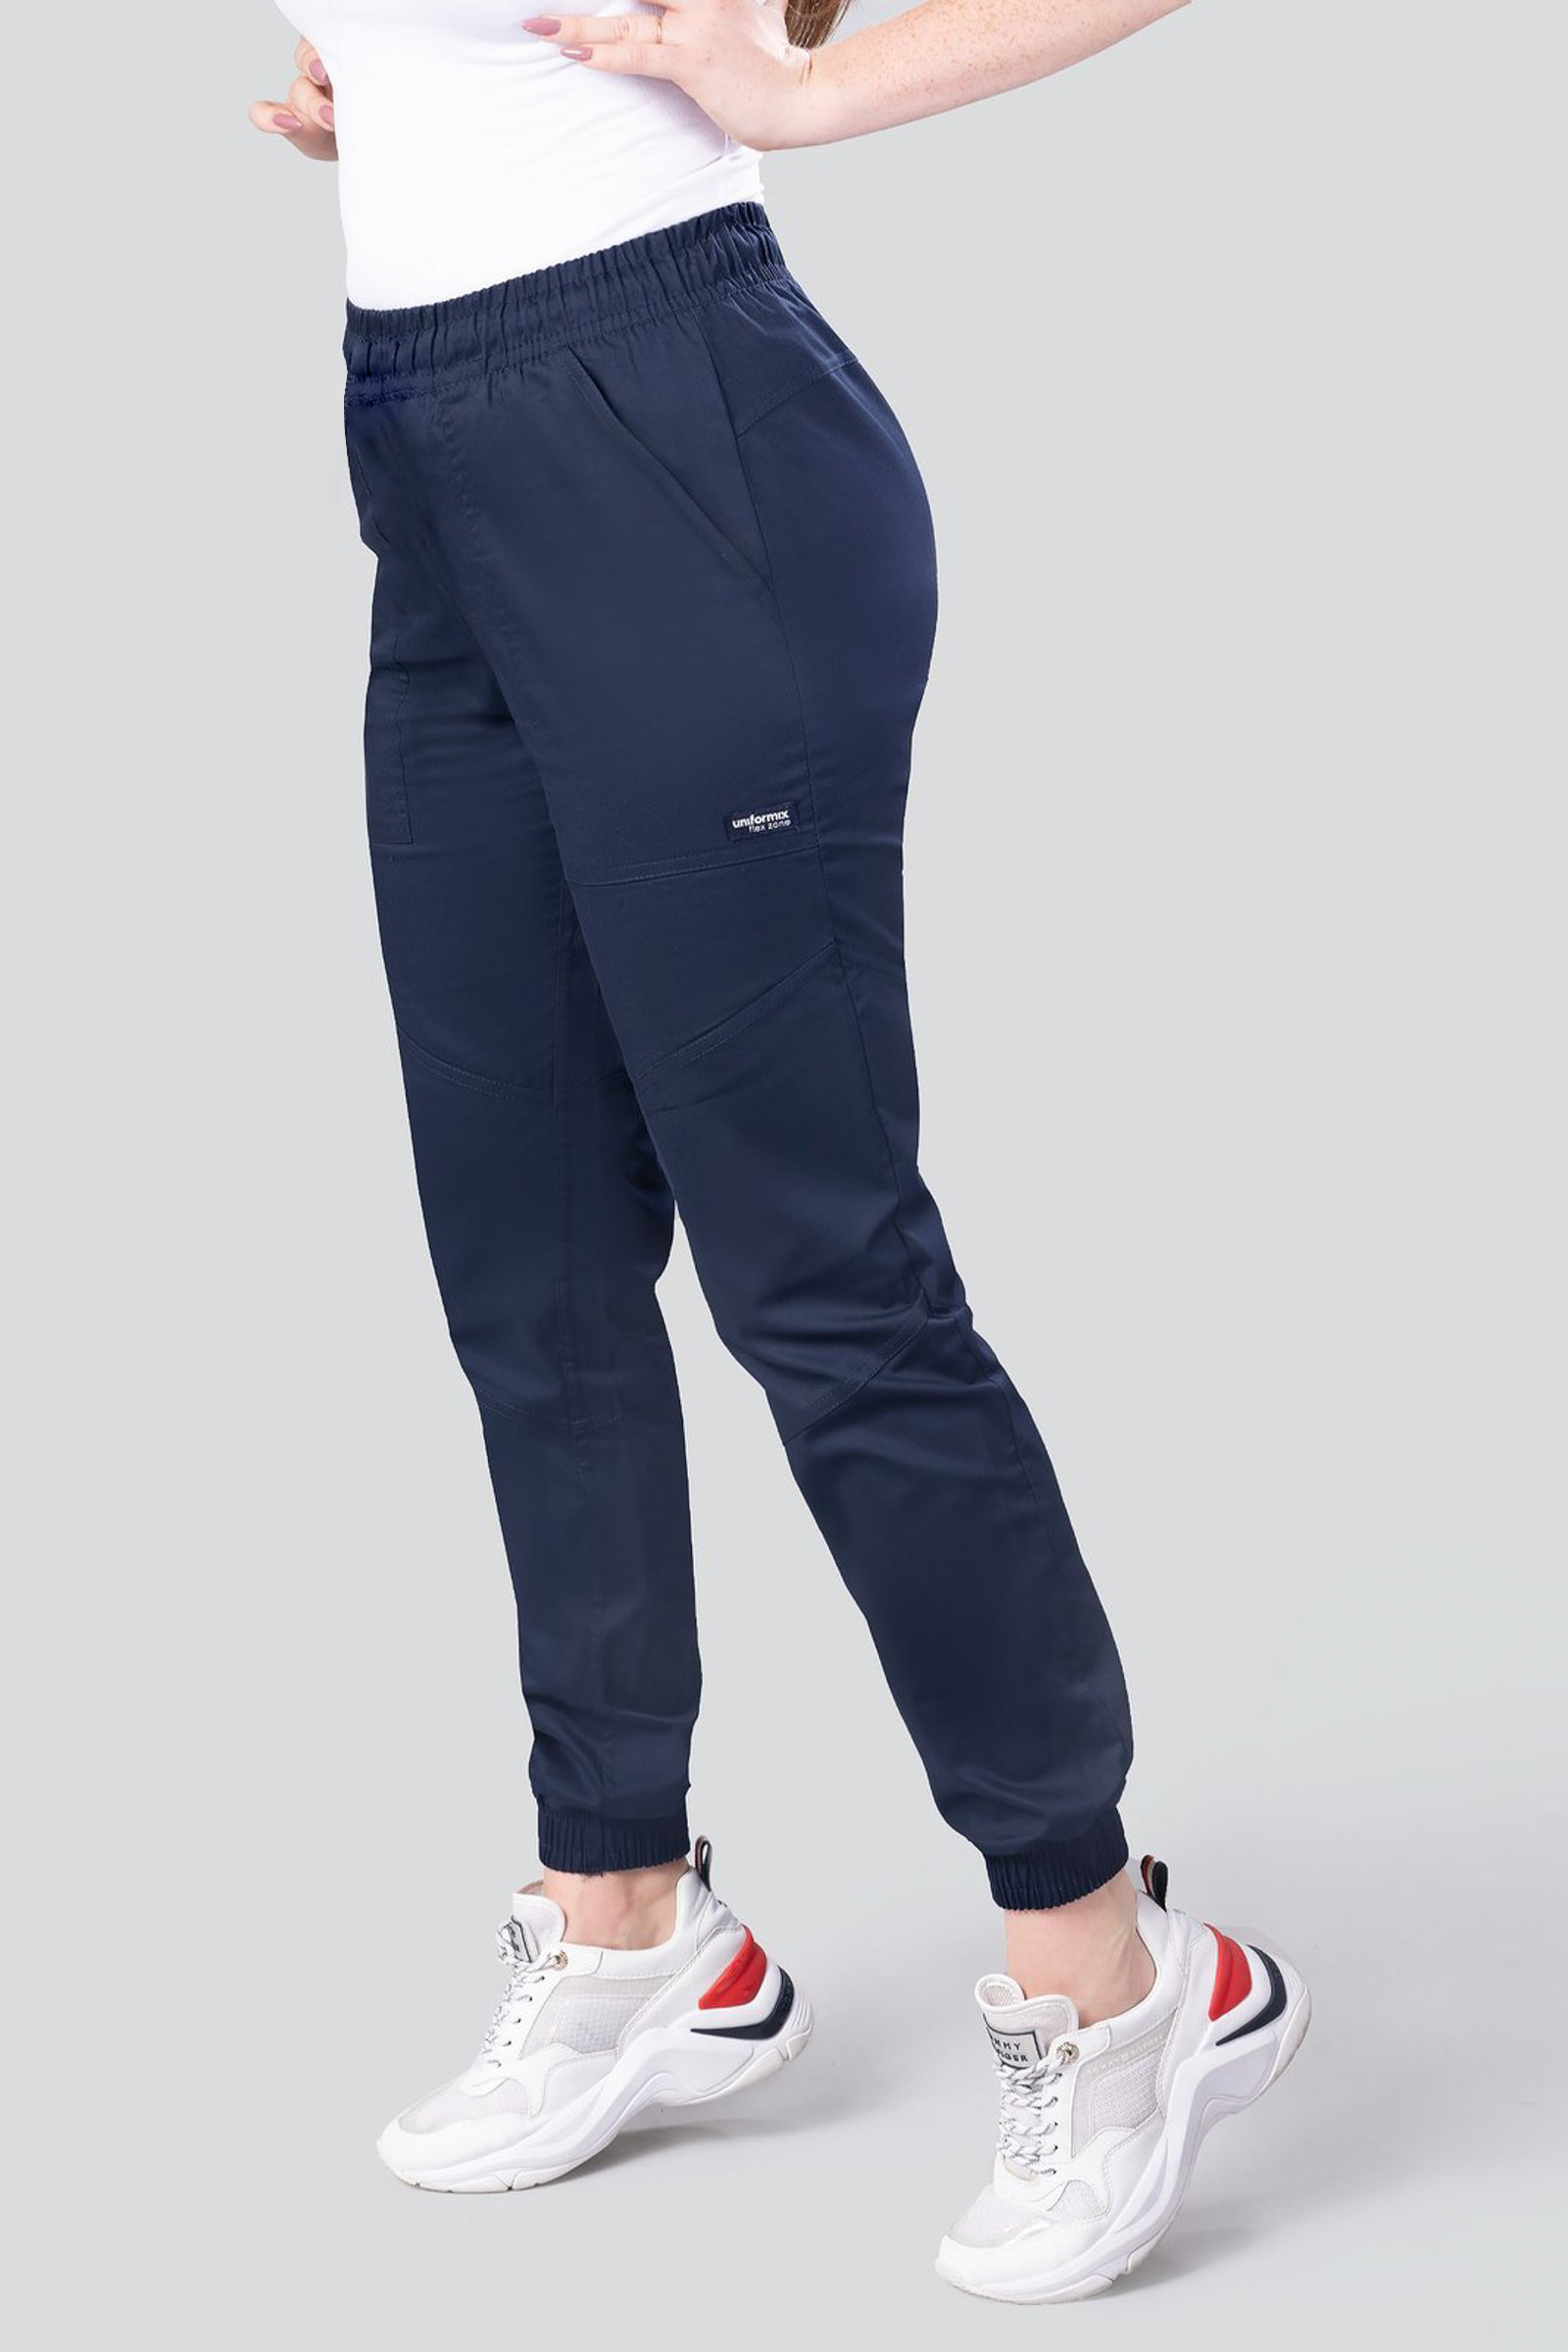 Spodnie medyczne damskie, joggery Uniformix FLEX ZONE, FZ2056, granatowy  granatowy / spodnie i spódnice medyczne / Sklep internetowy